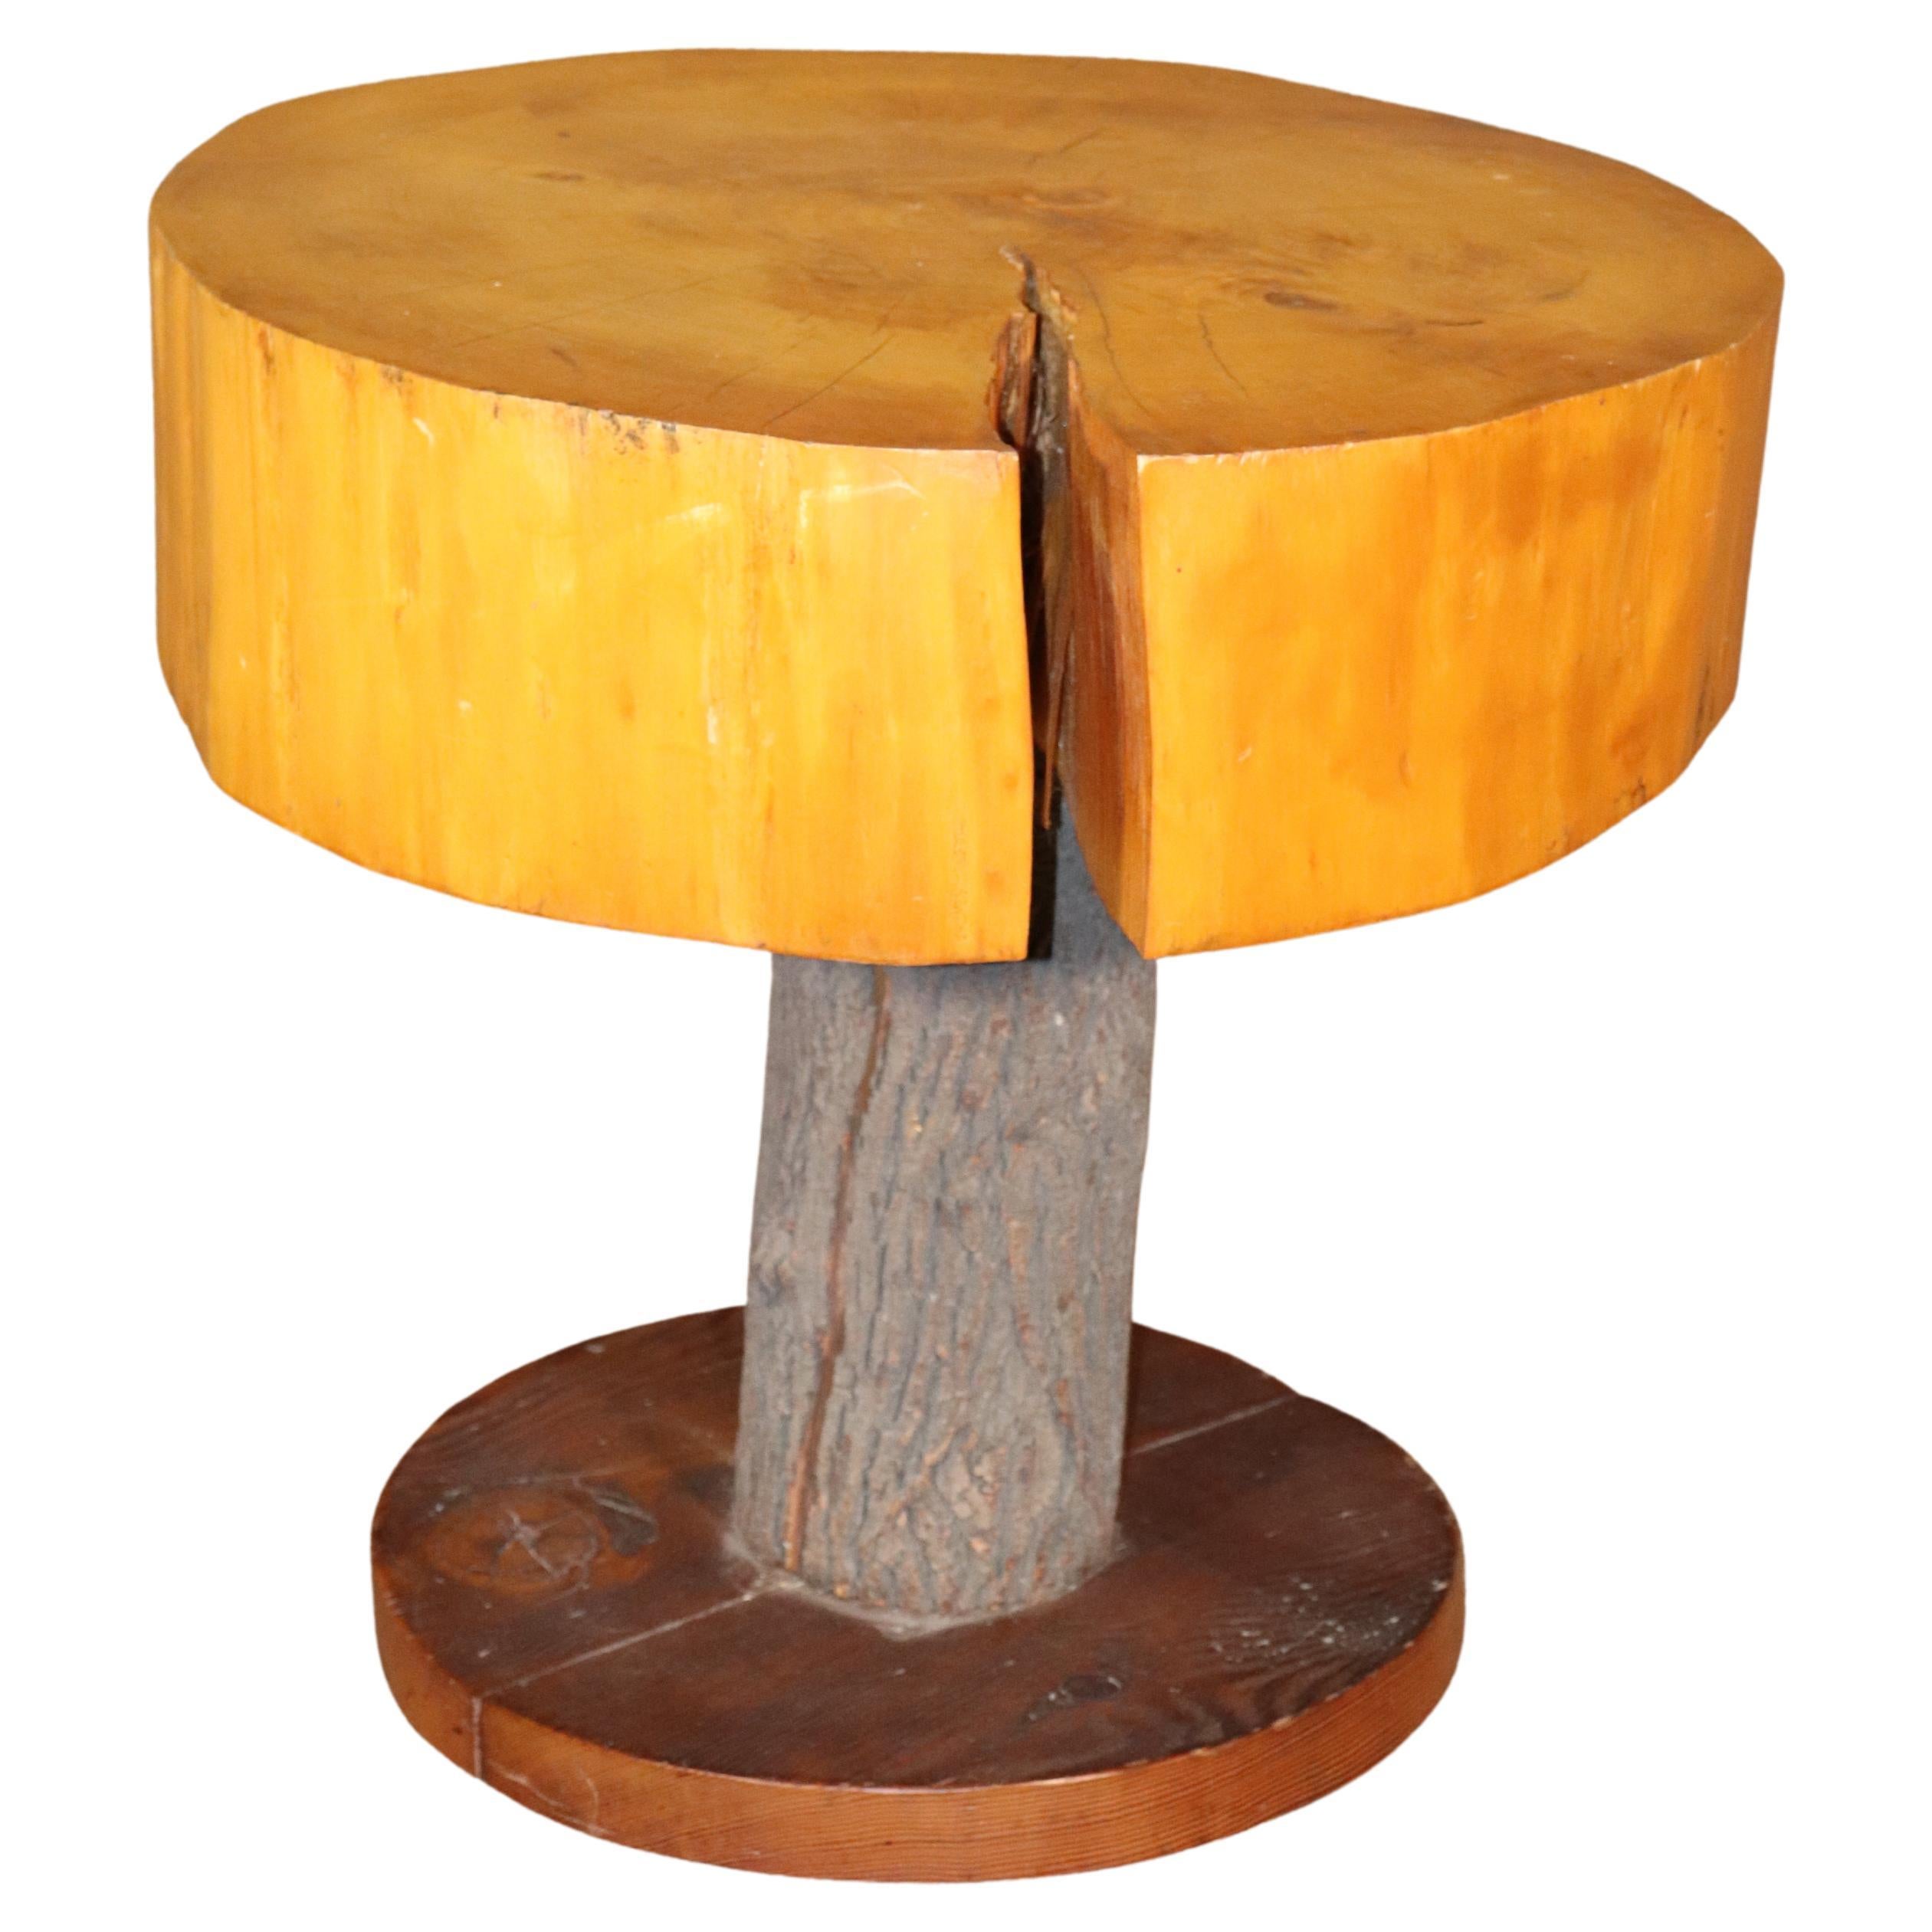 Table en dalles d'arbre faite à la main